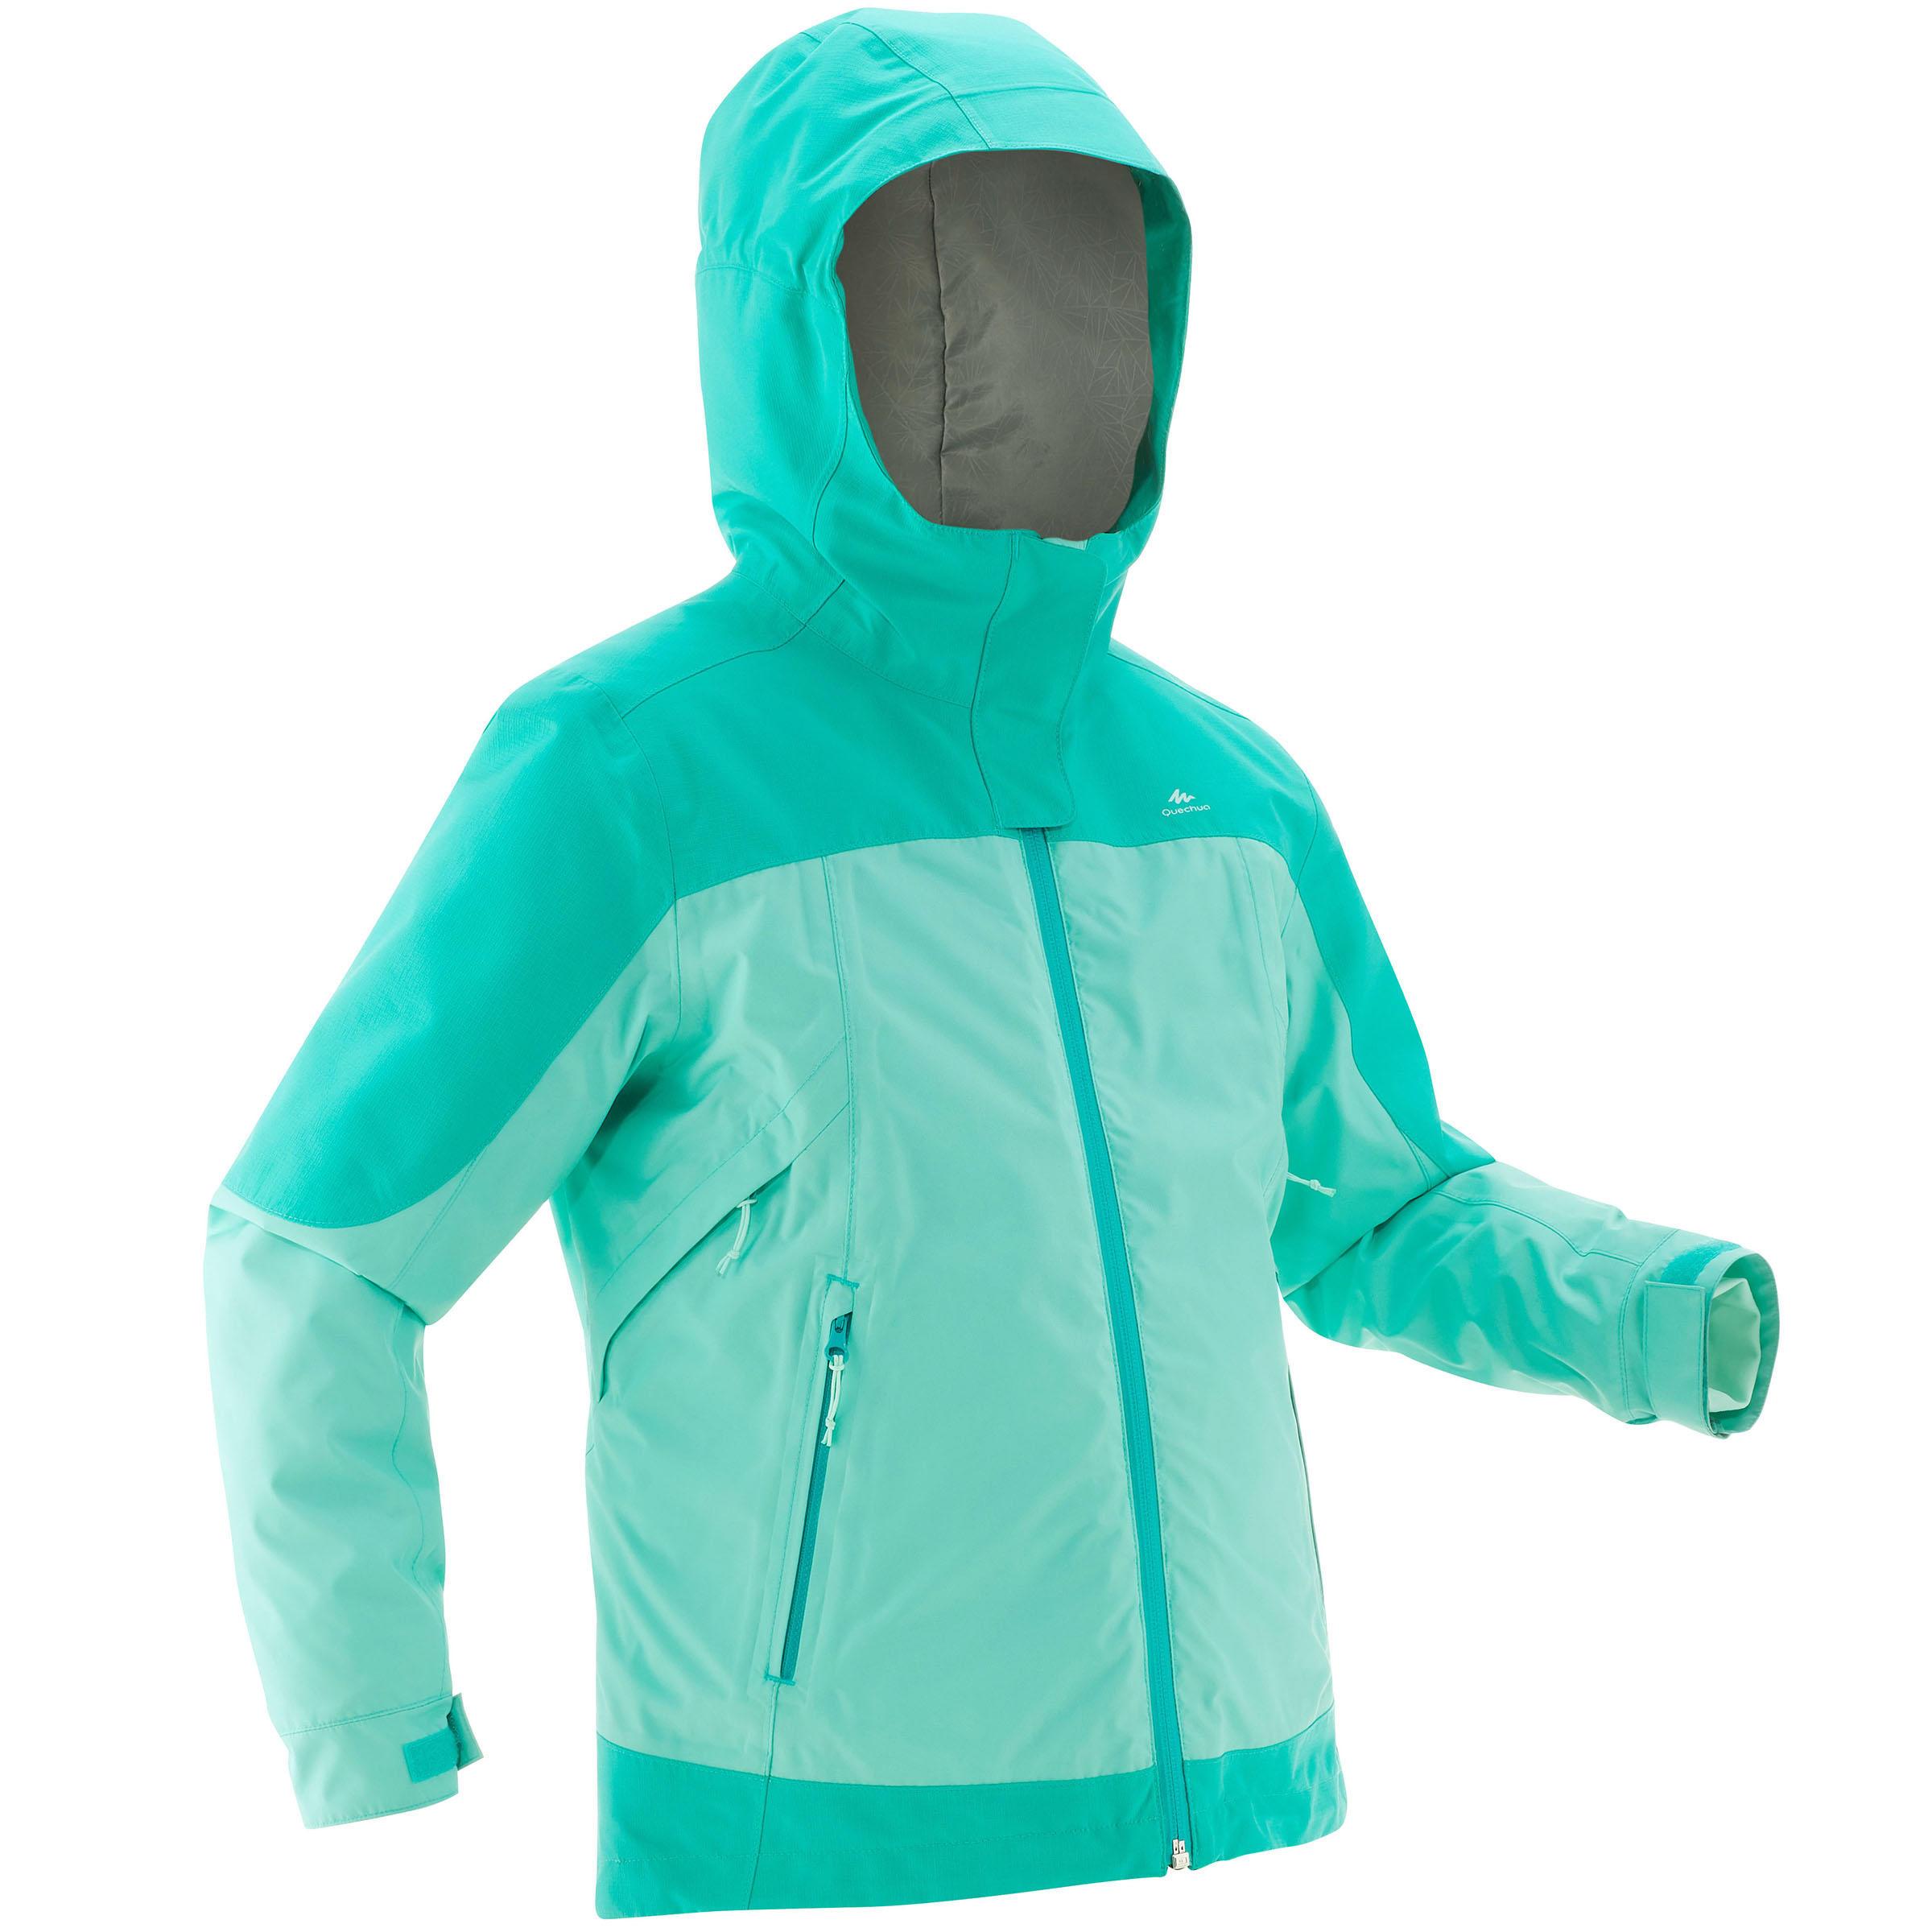 [ด่วน!! โปรโมชั่นมีจำนวนจำกัด] เสื้อแจ็คเก็ตเด็ก 3-IN-1 สำหรับใส่เดินป่าลุยหิมะรุ่น SH500 X-WARM (สีเขียว) สำหรับ เดินป่า